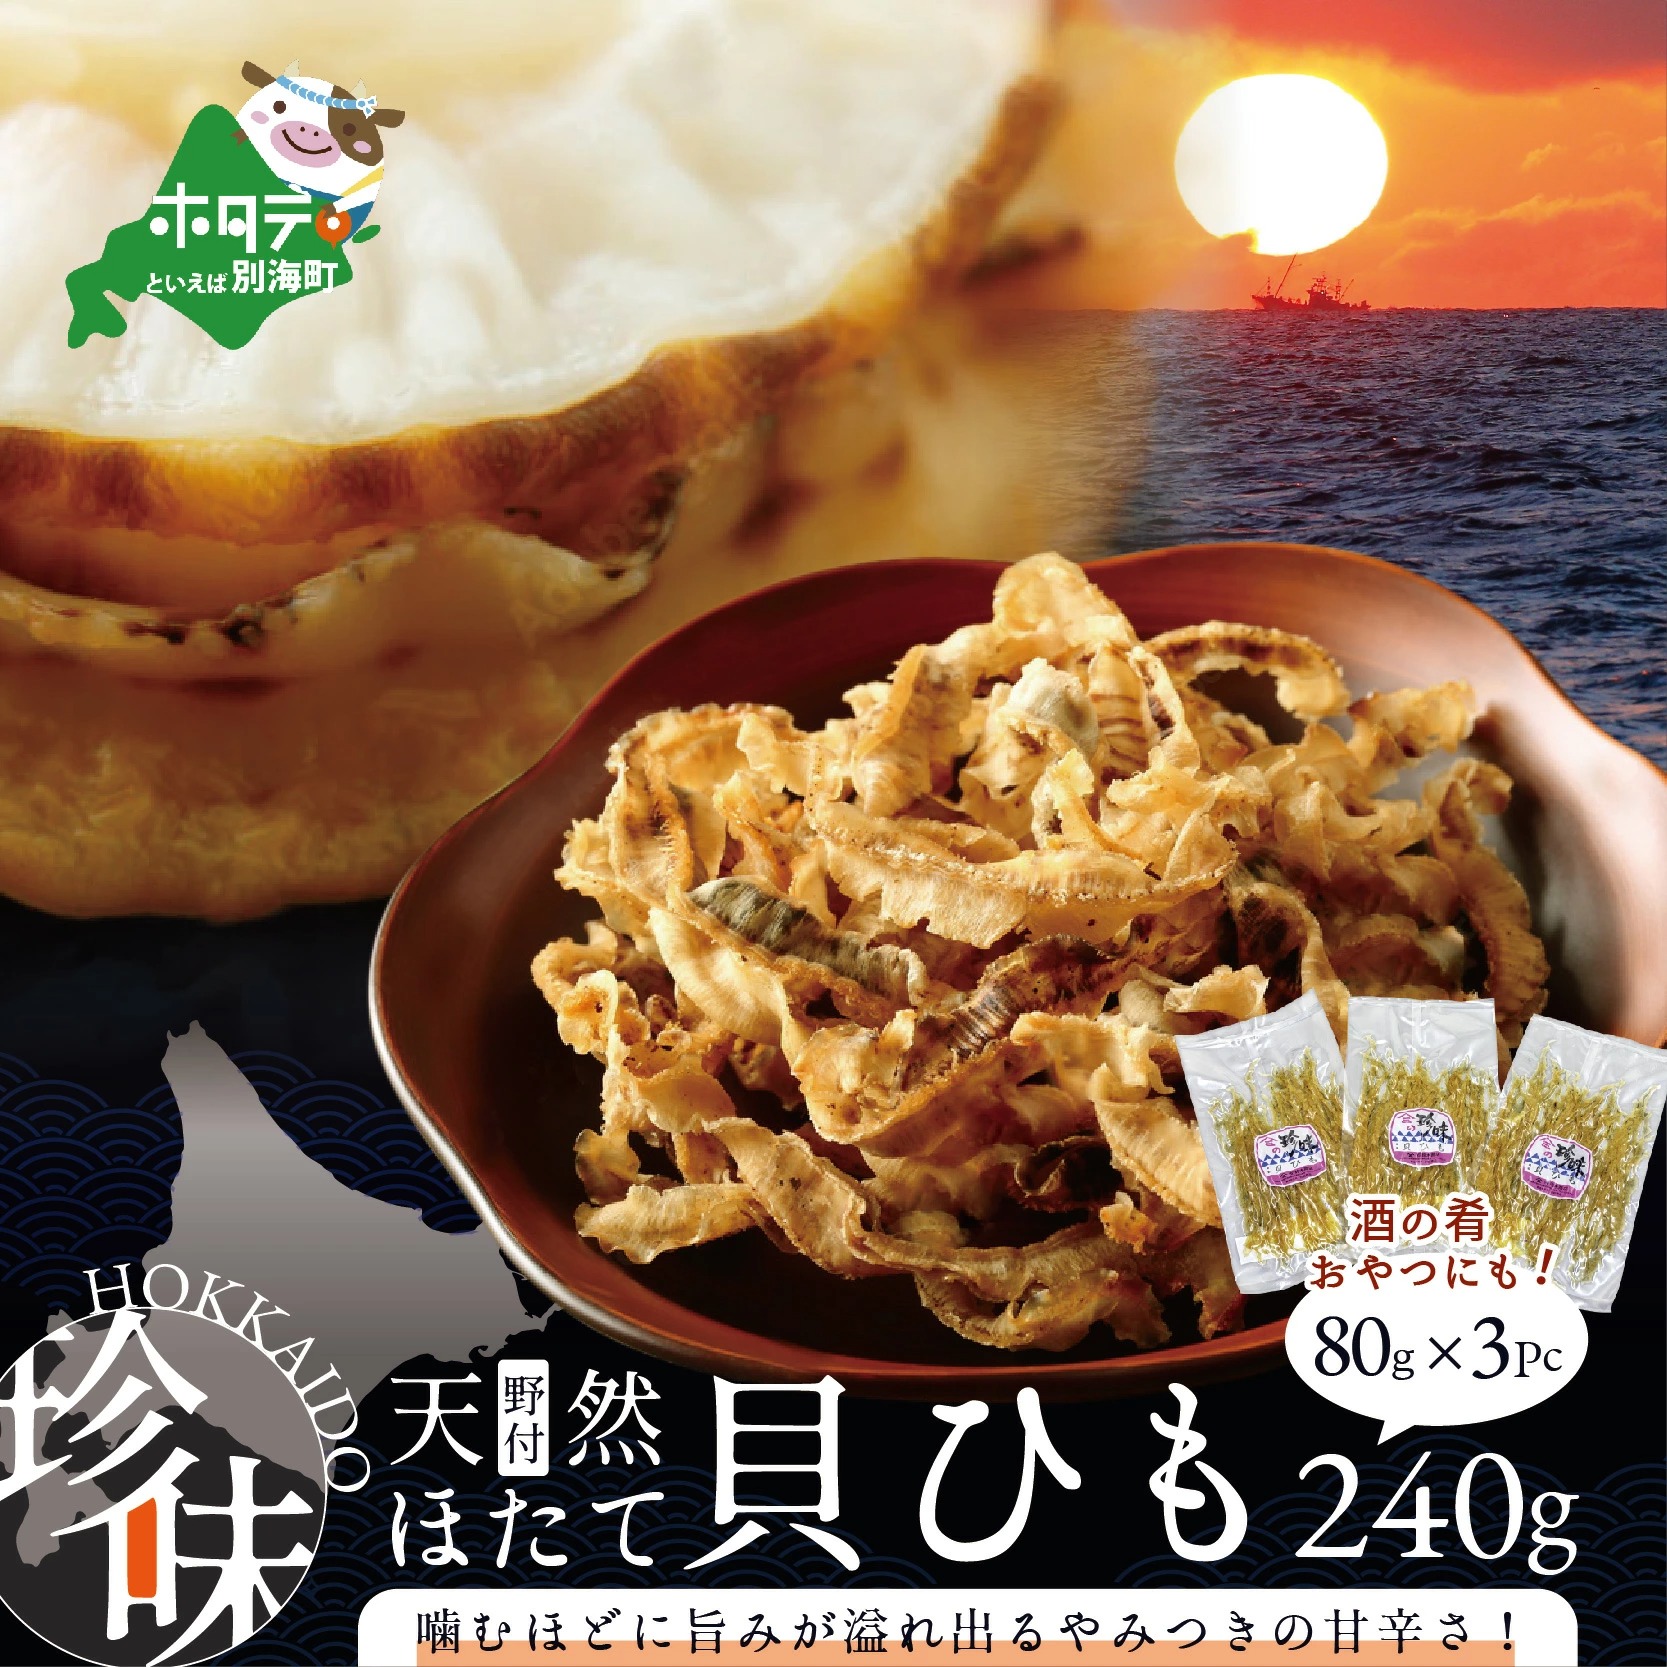 北海道野付産天然ホタテの耳を加工した貝ひも珍味「帆立のしみみ 240g (80g×3パック)」